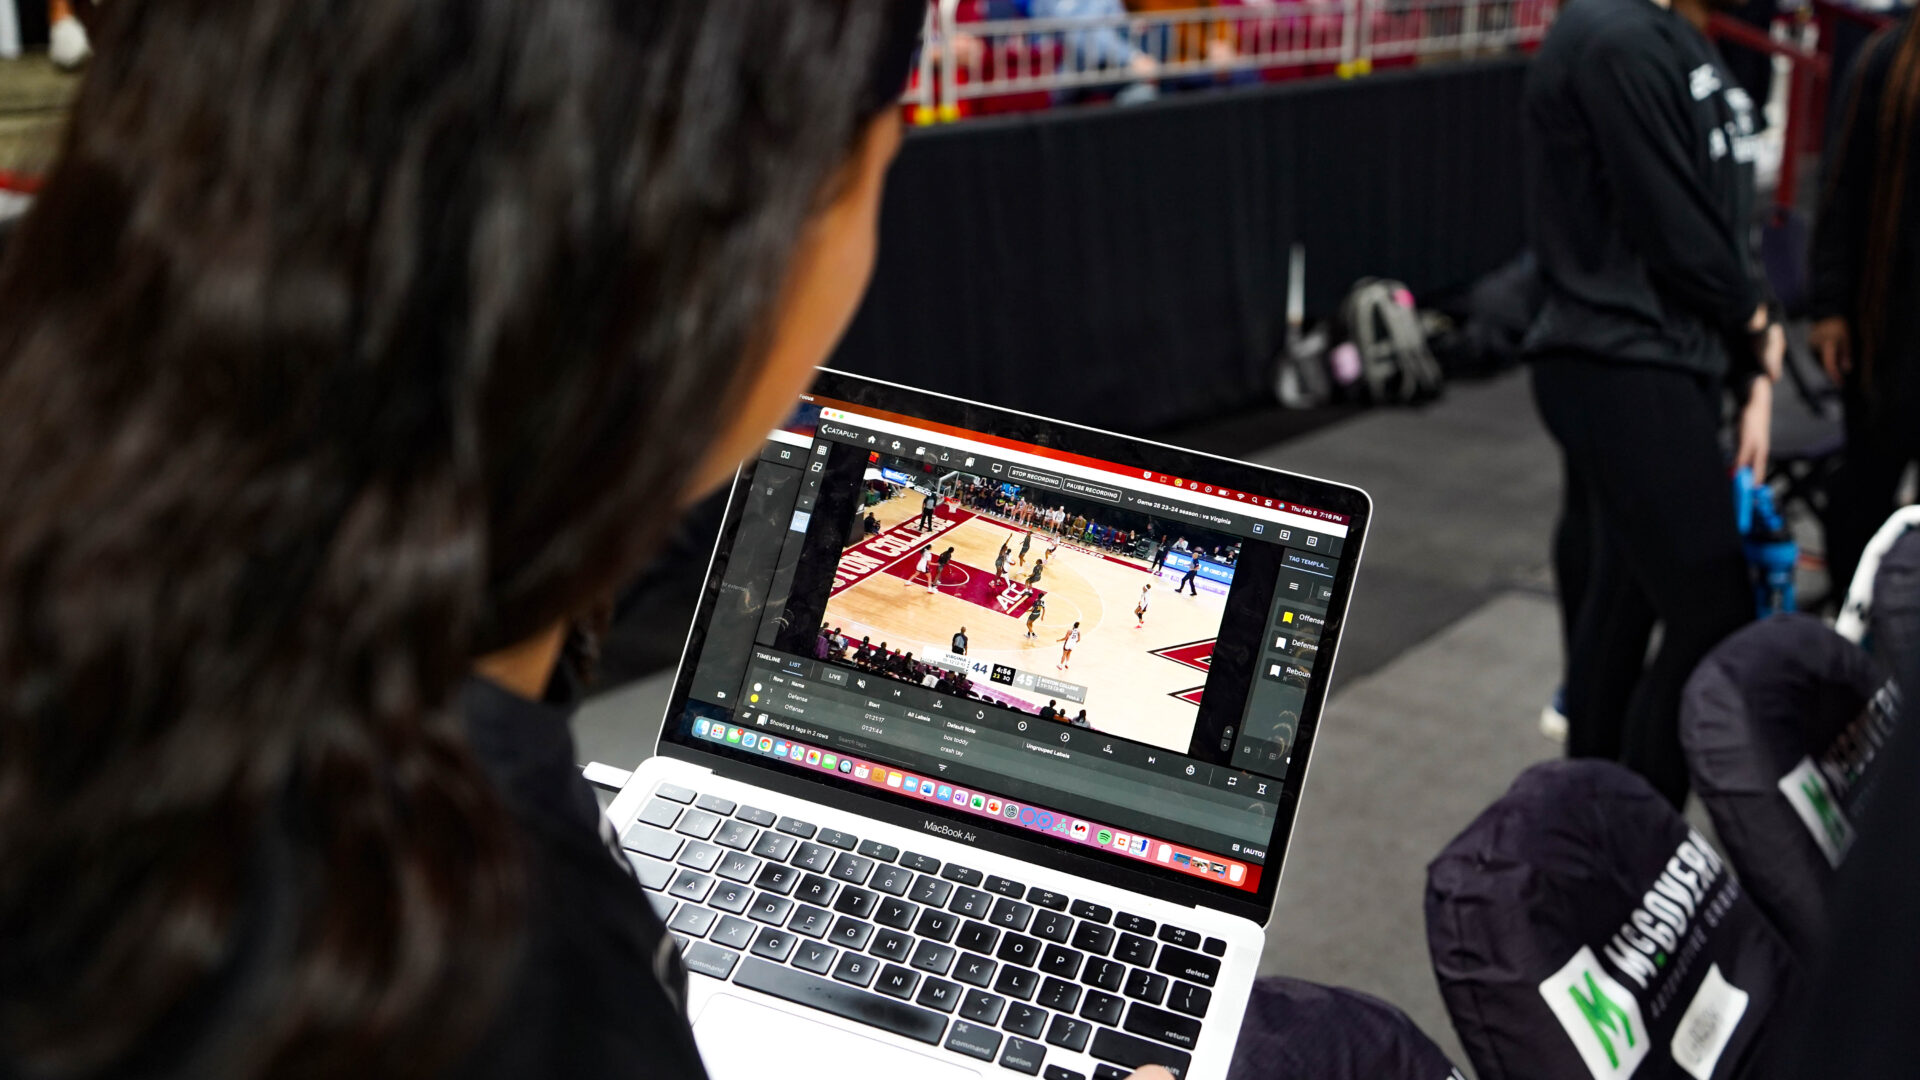 Es findet eine gezielte Interaktion zwischen einem Basketballspieler des Boston College und einem Trainer statt, wobei die Pro Video Focus-Analyse auf dem Laptop-Bildschirm sichtbar ist. Dies unterstreicht die Integration von Live-Videoanalysen in ihr Training, die für die Verbesserung von Leistung und Spieltaktiken von entscheidender Bedeutung sind.